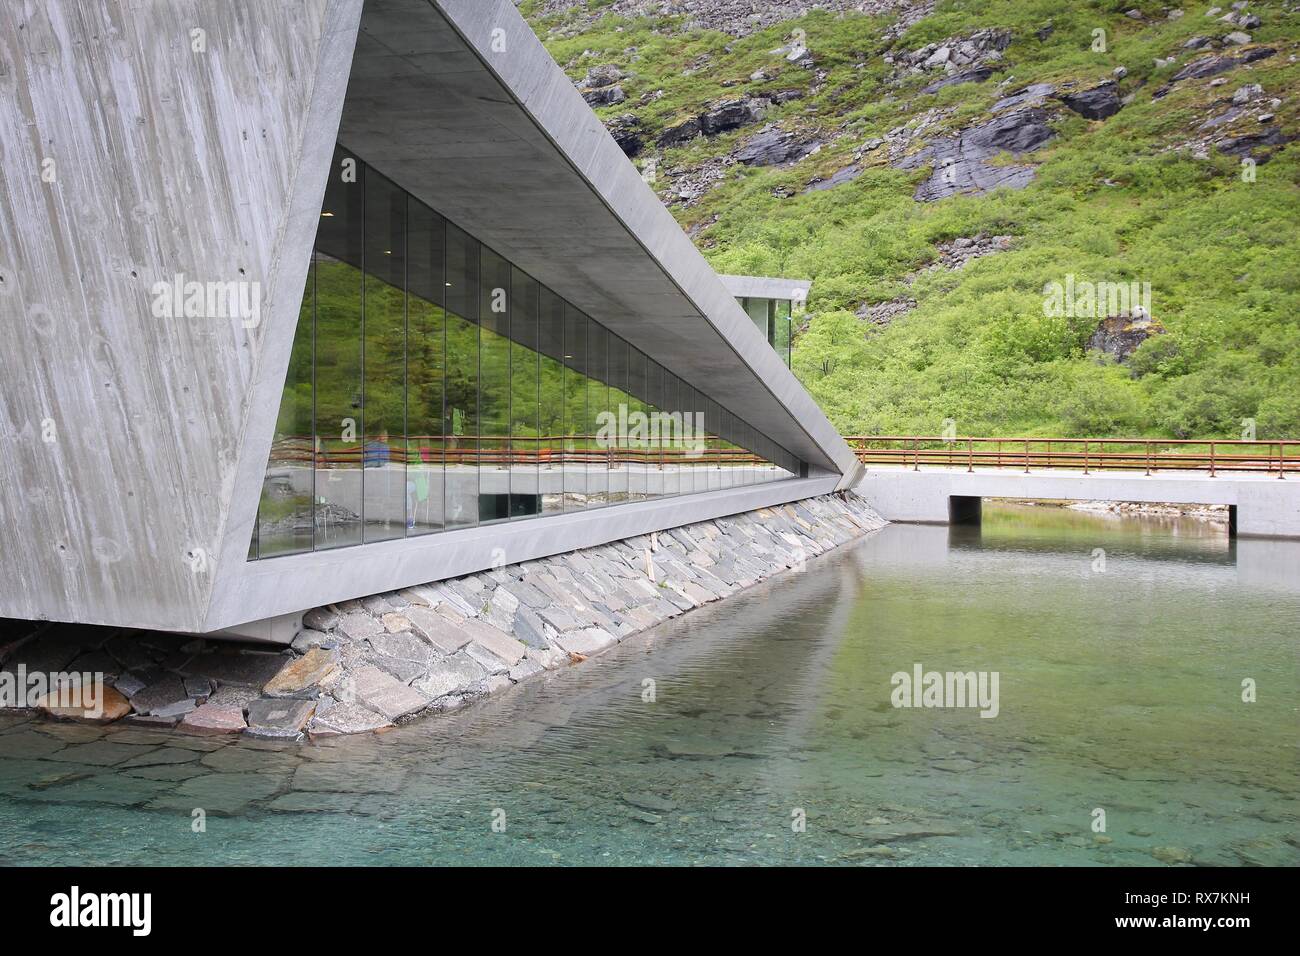 TROLLSTIGEN, Norvegia - Luglio 20, 2015: la gente visita moderno centro informazioni turistiche a Trollstigveien, Norvegia. I turisti stranieri ha speso circa 5 milioni di o Foto Stock